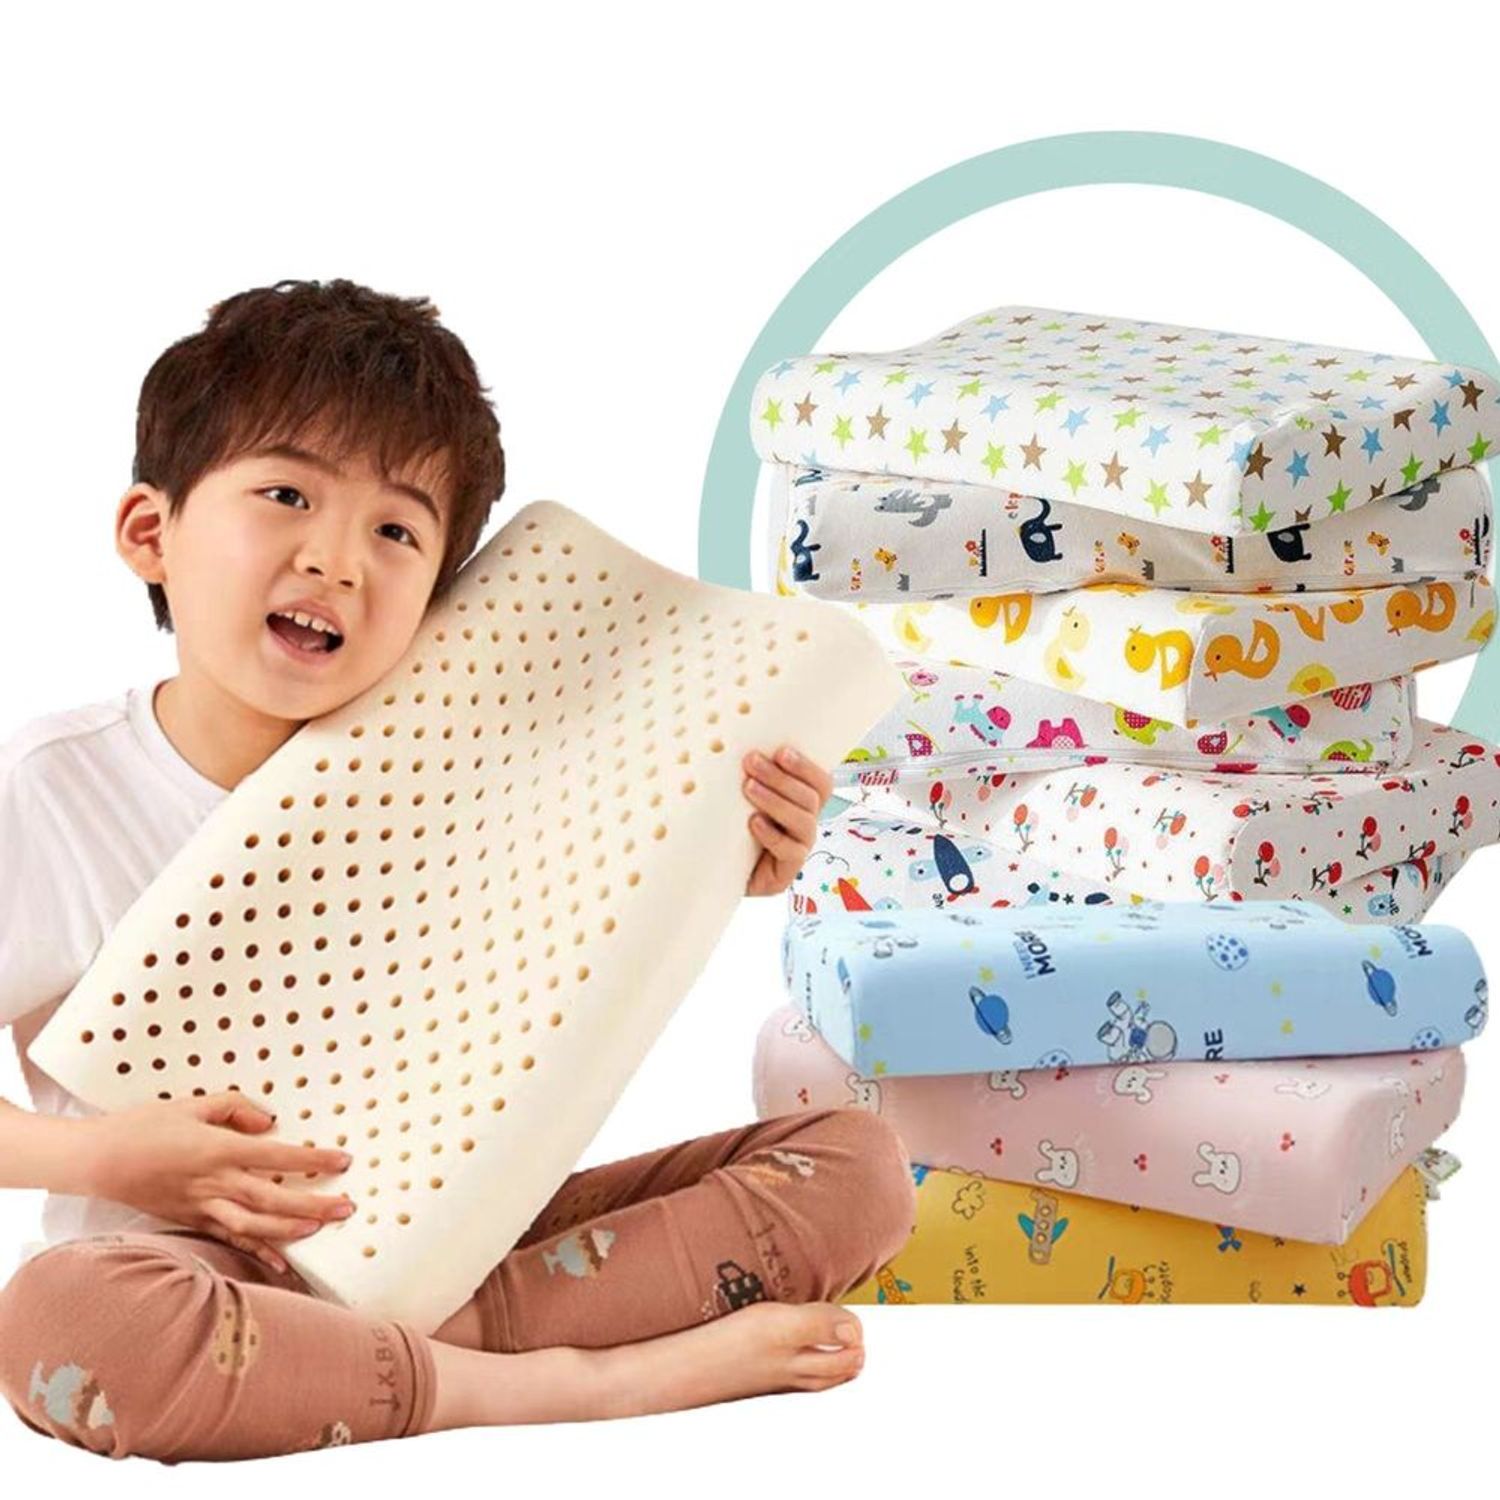 Almohada Memory Foam Infantil (Niño) - Tienda del Confort y Protección